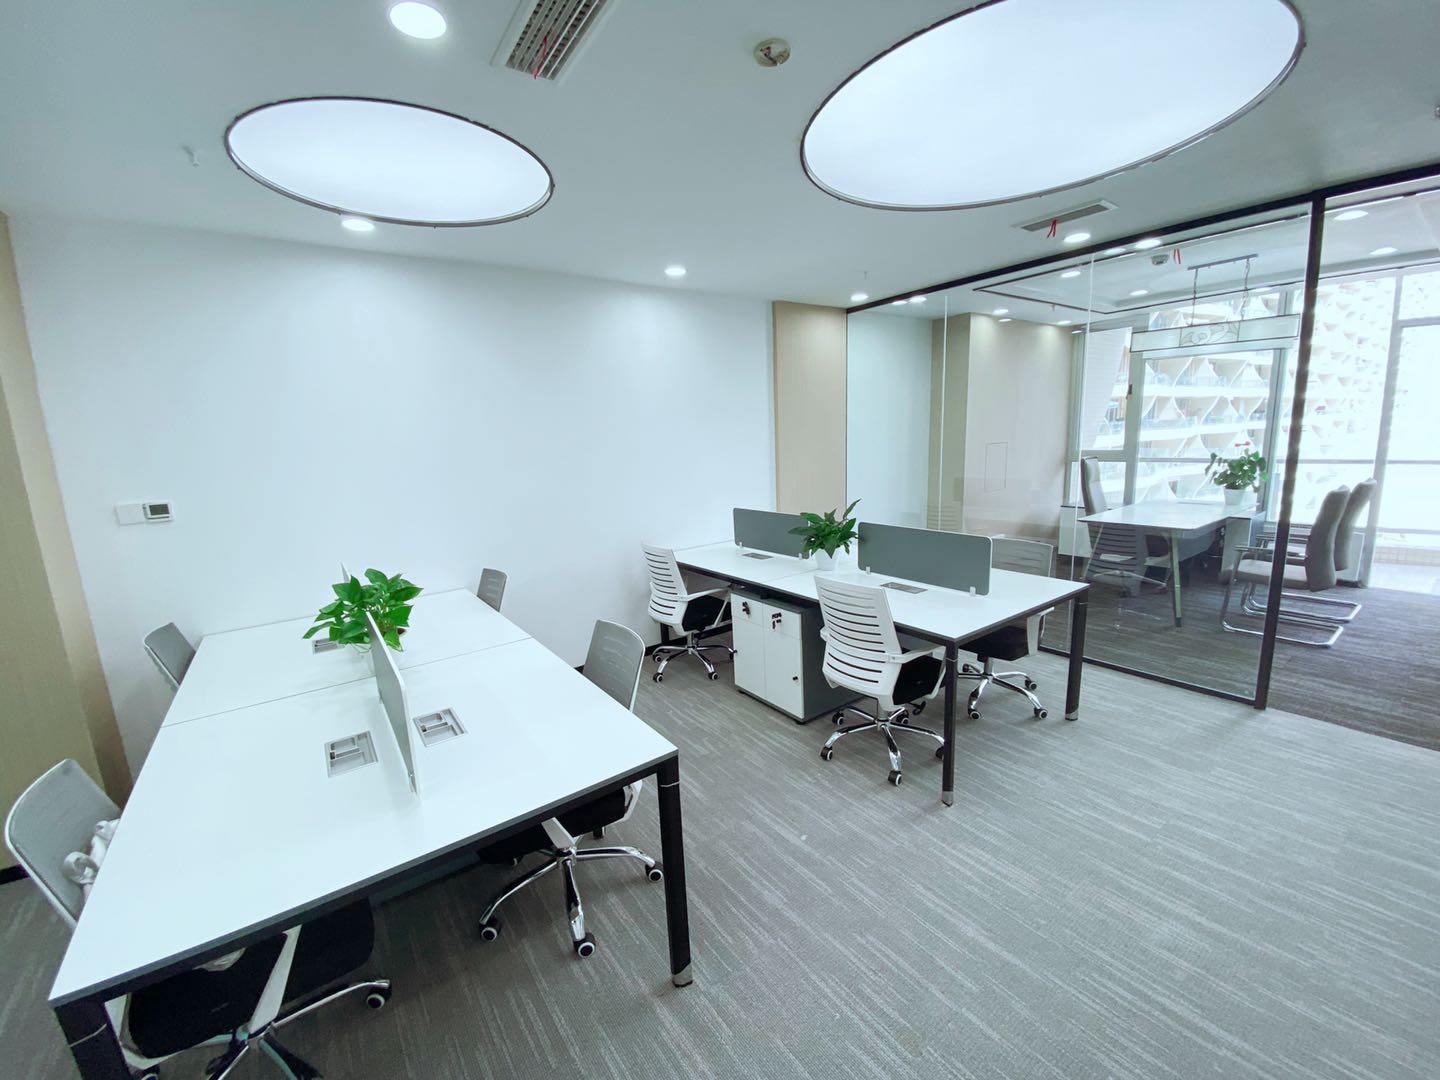 高新区新世纪环球中心精装小面积办公室 简约网红风格 含物业和空调费